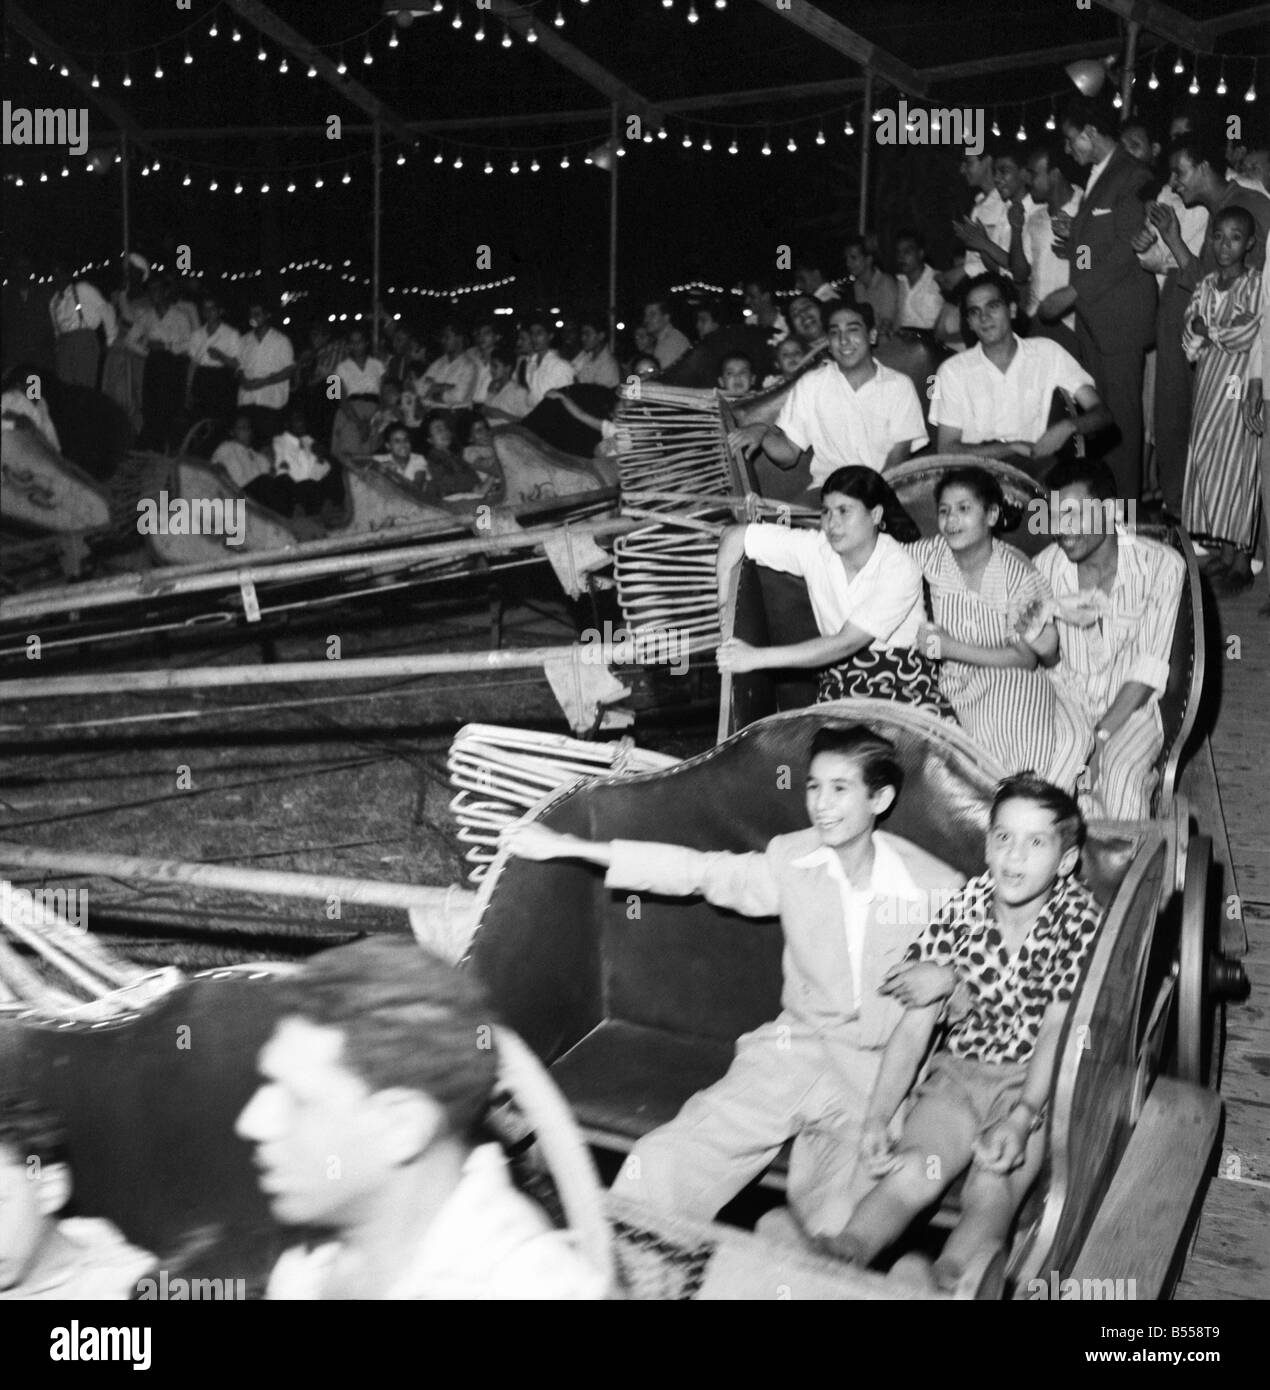 Egitto : Il Cairo luna park famiglie egiziane godendo di una notte di divertimento in fiera nella periferia della città. Il giro del rotore è particolarmente preferito. Luglio 1953 D3826-002 Foto Stock